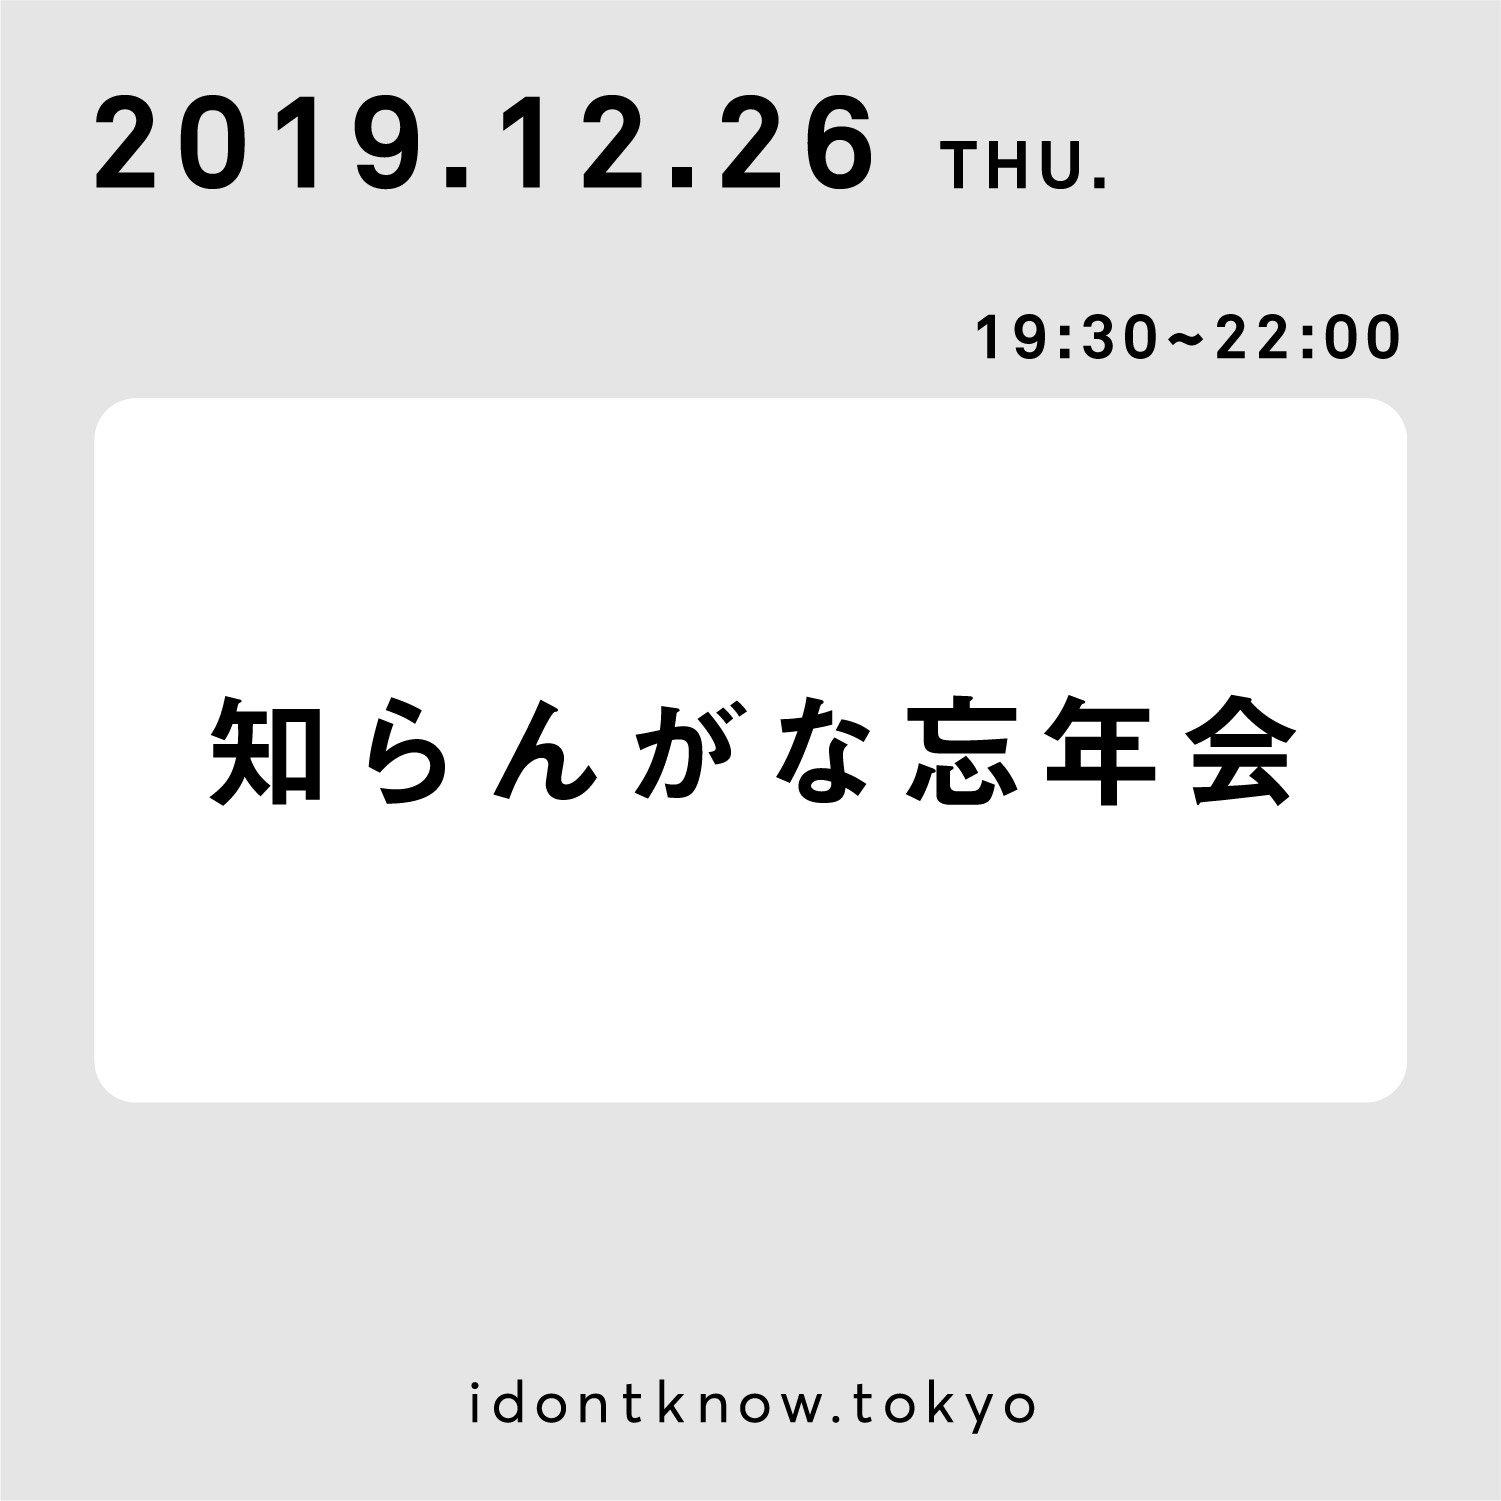 idk2019_ticket 04